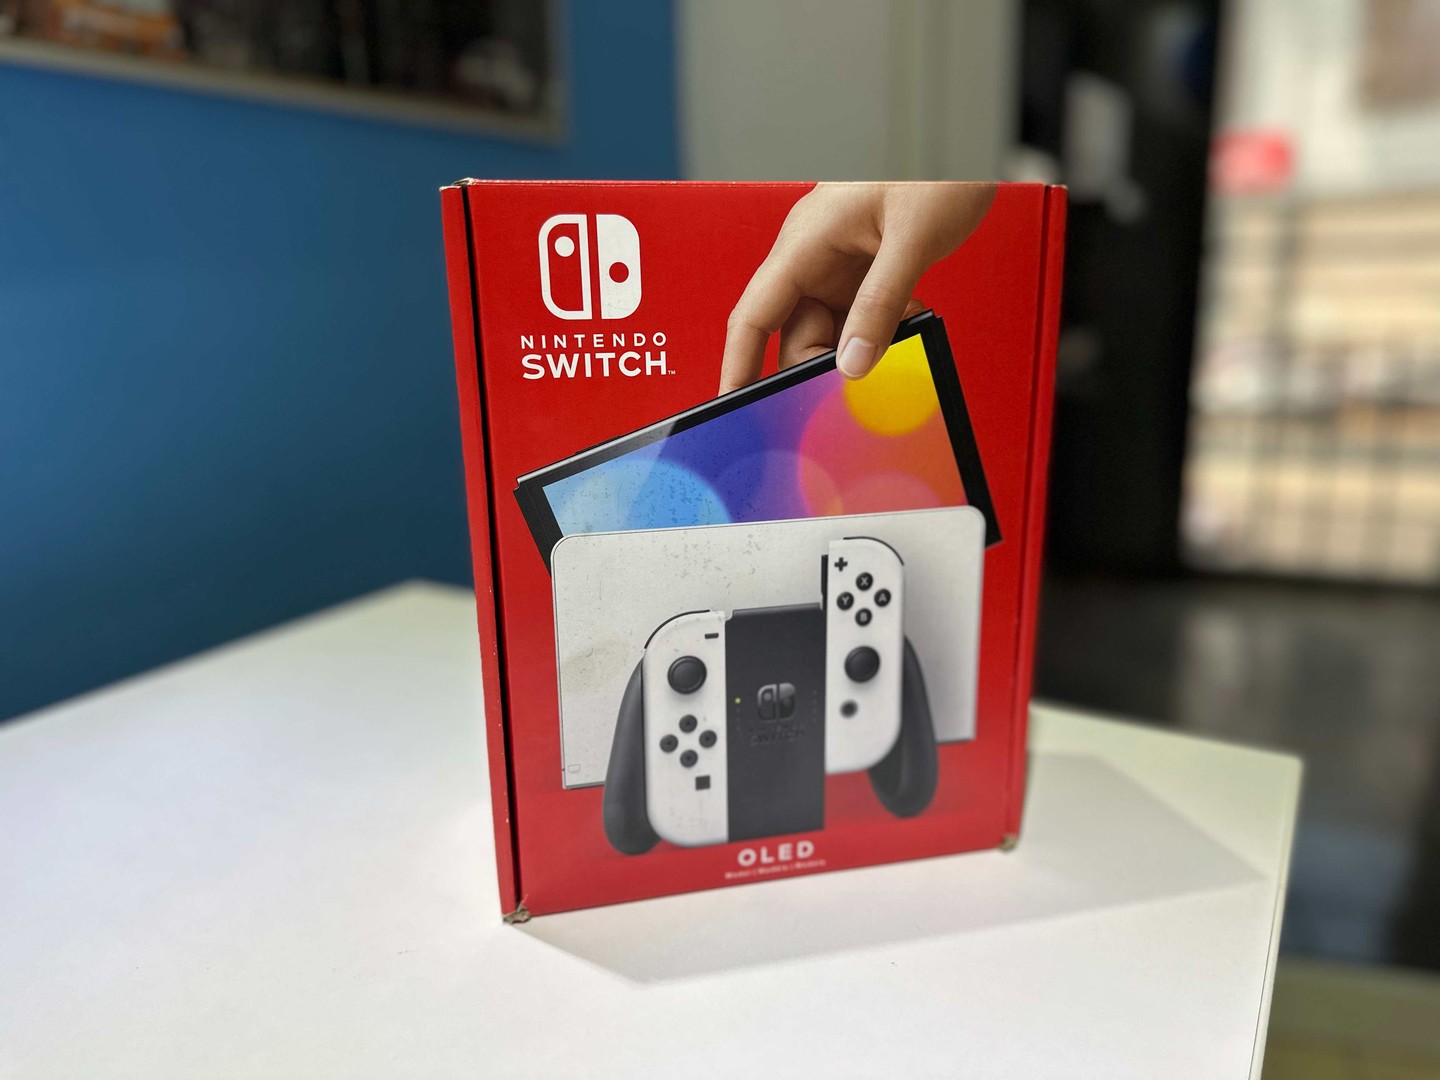 consolas y videojuegos - Vendo Nintendo Switch OLED Blanco Nuevos Sellados  , Originales RD$ 20,300 NEG